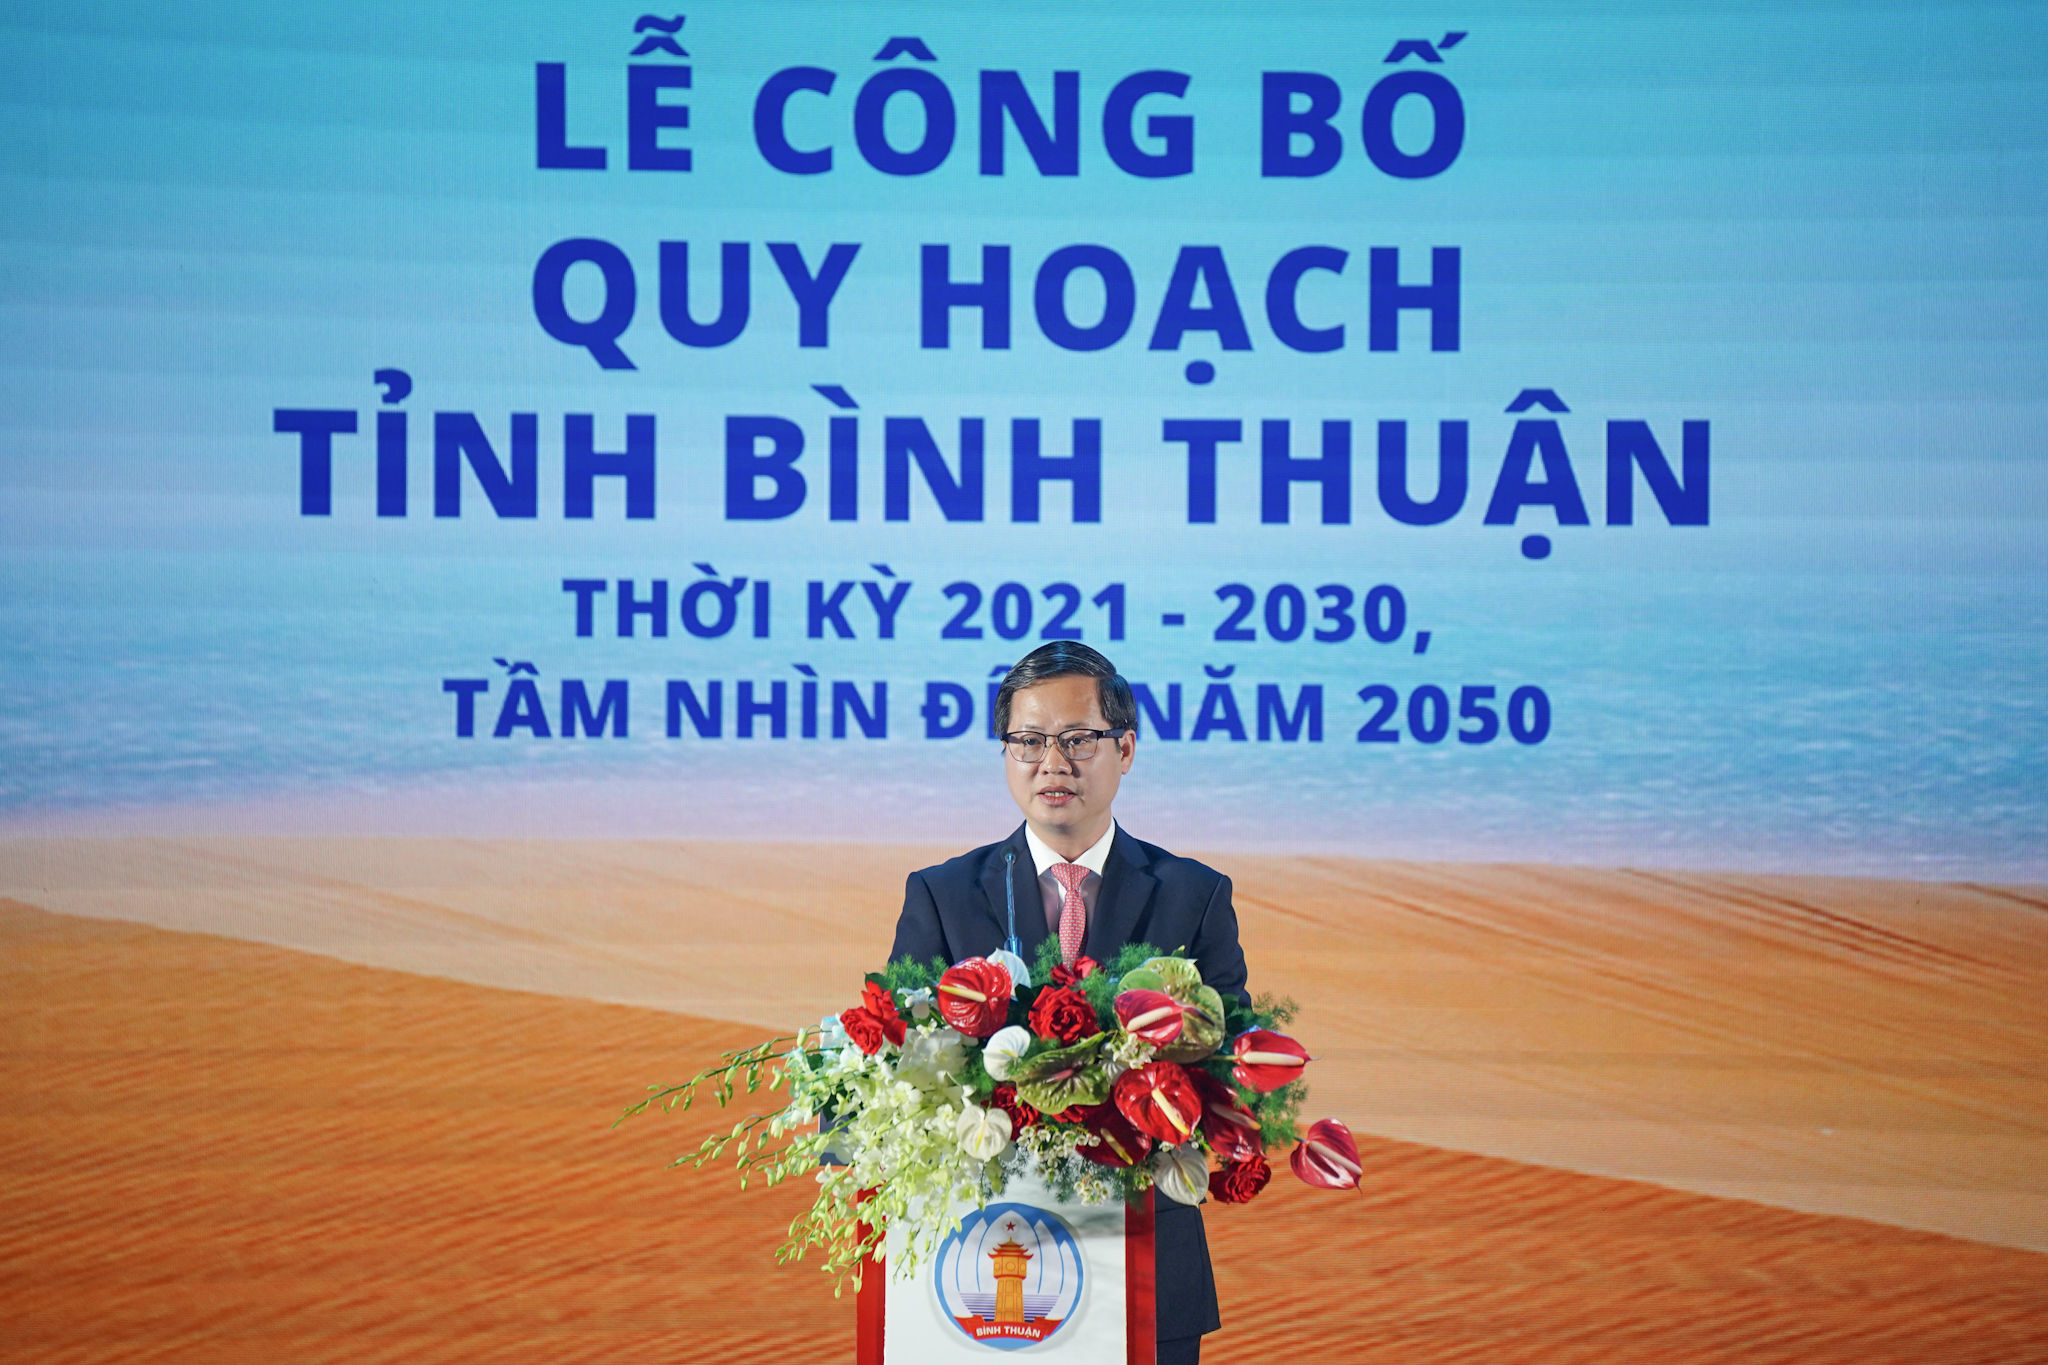 Bình Thuận công bố Quy hoạch thời kỳ 2021 - 2030, tầm nhìn đến năm 2050, trao giấy chứng nhận cho những dự án lớn- Ảnh 2.